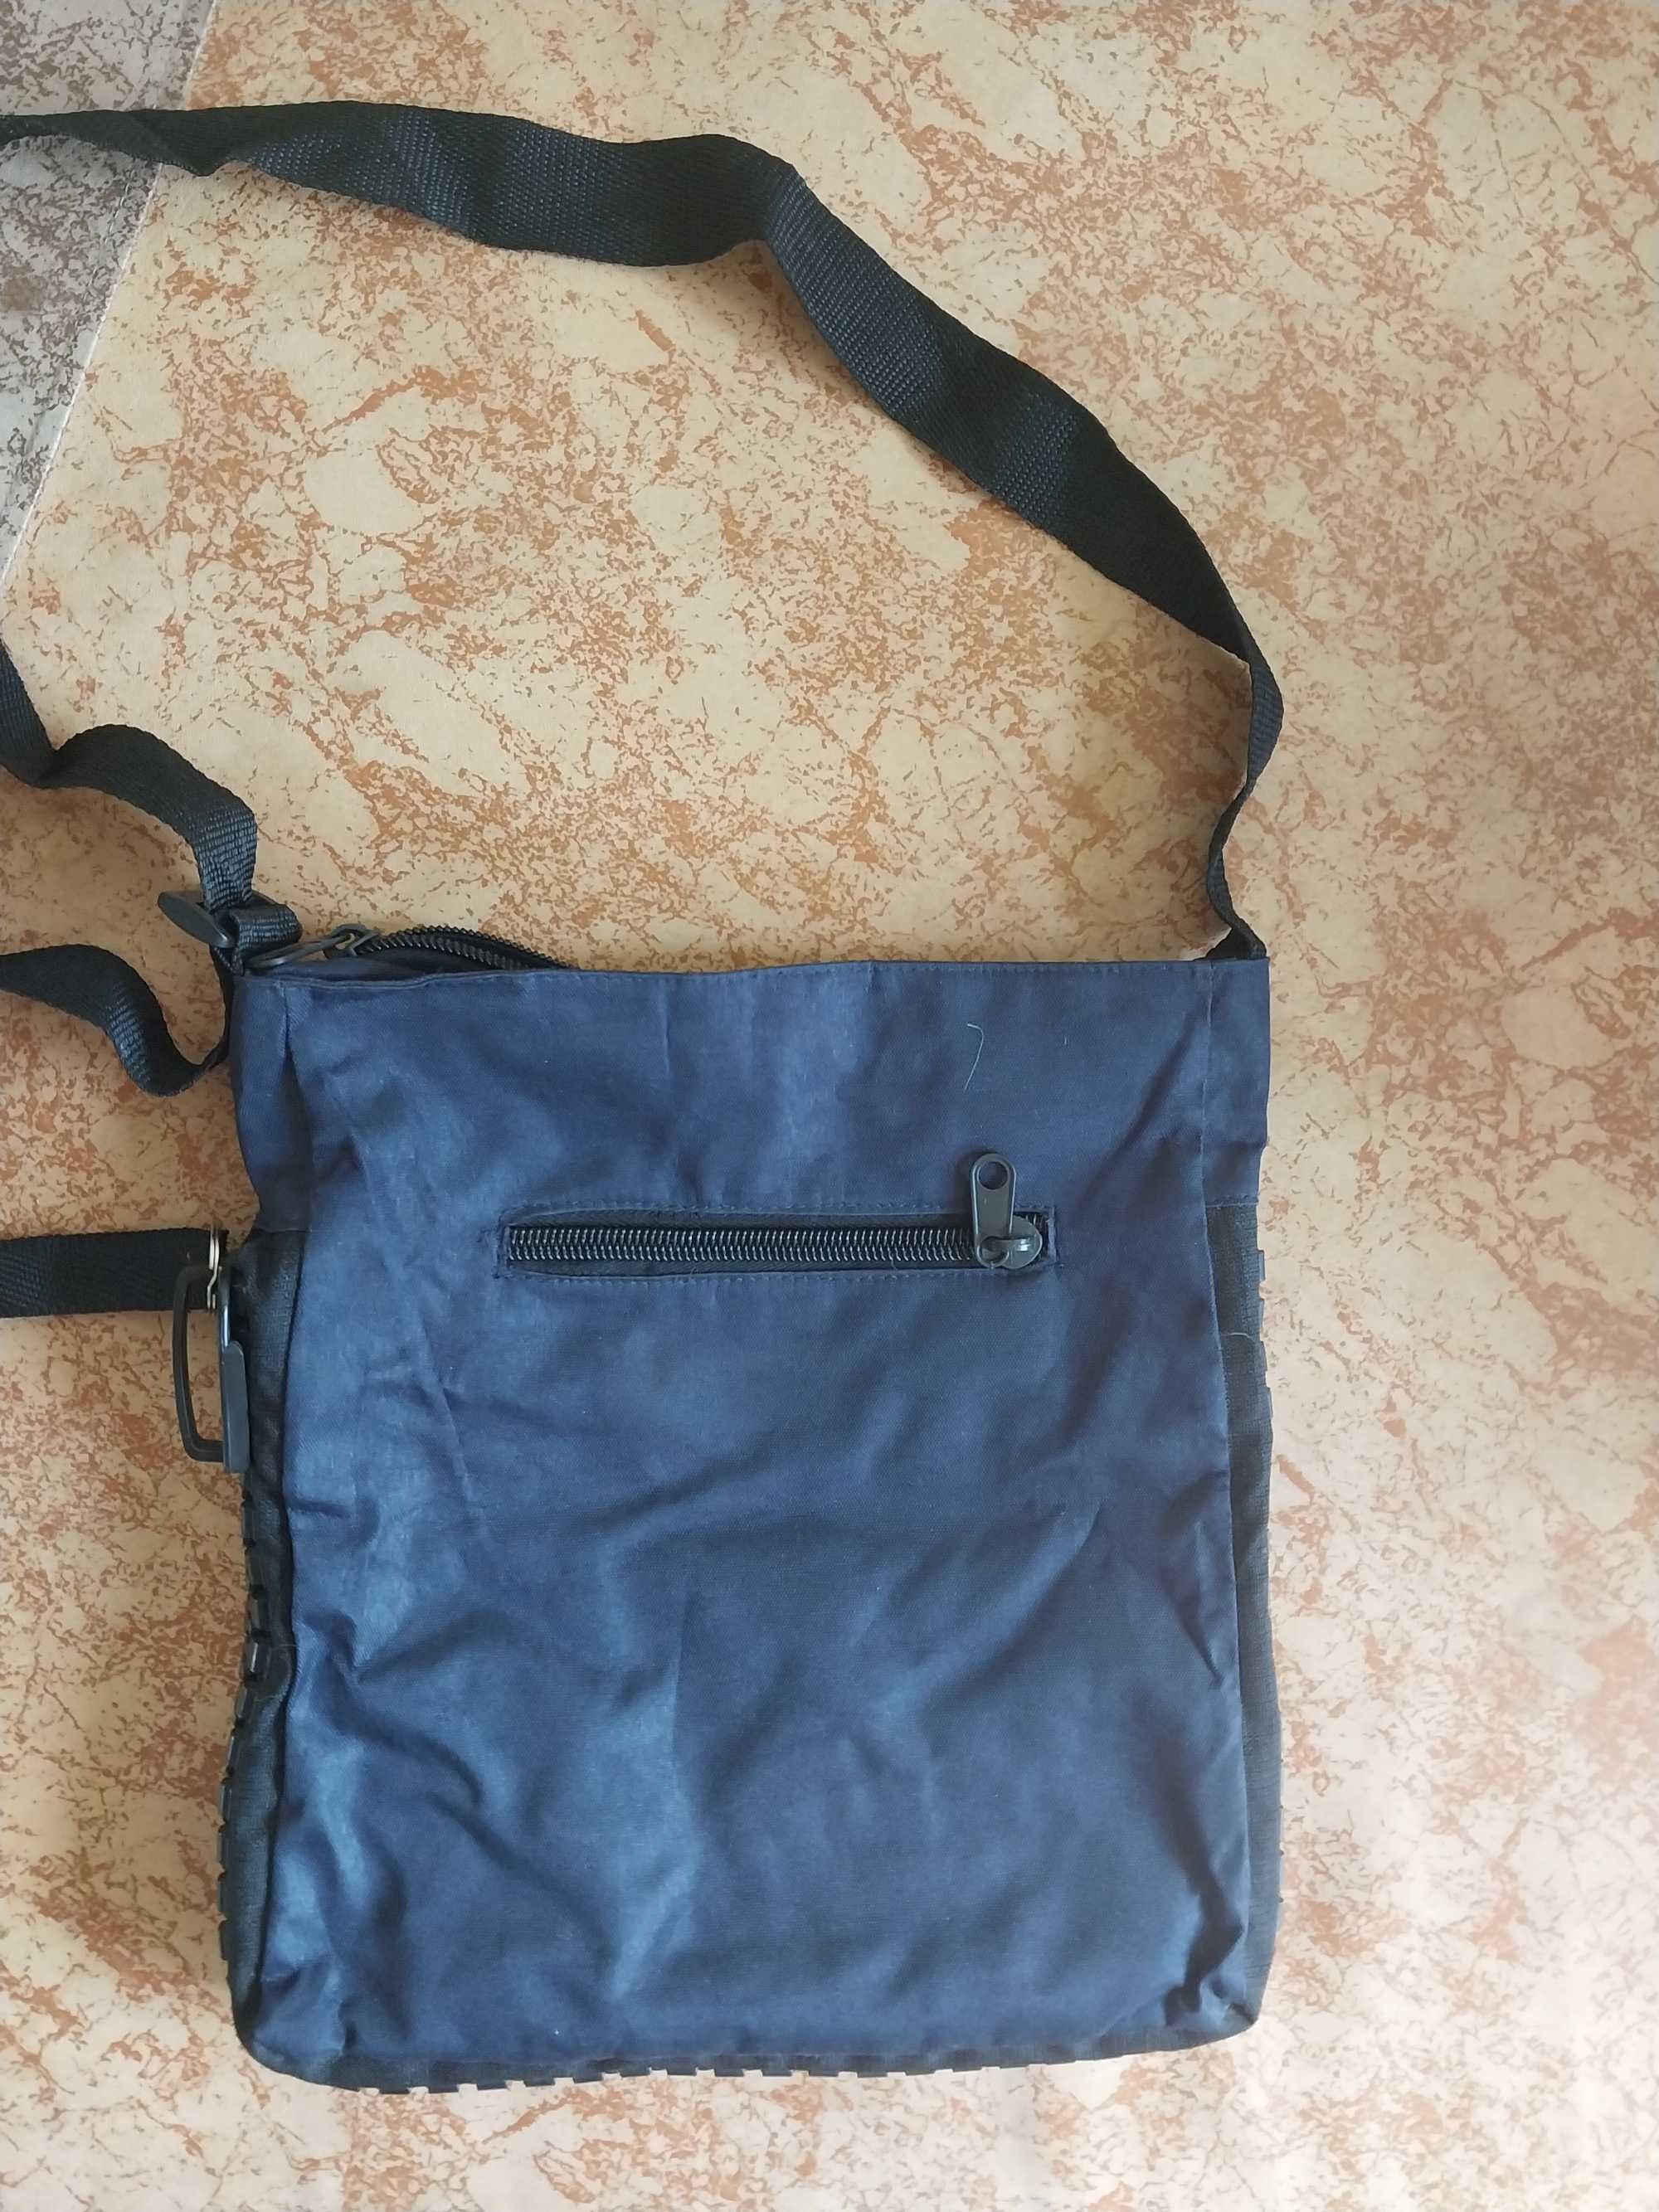 3 сумки, Tatty Teddy ×, Пляжная сумка, Детская сумка